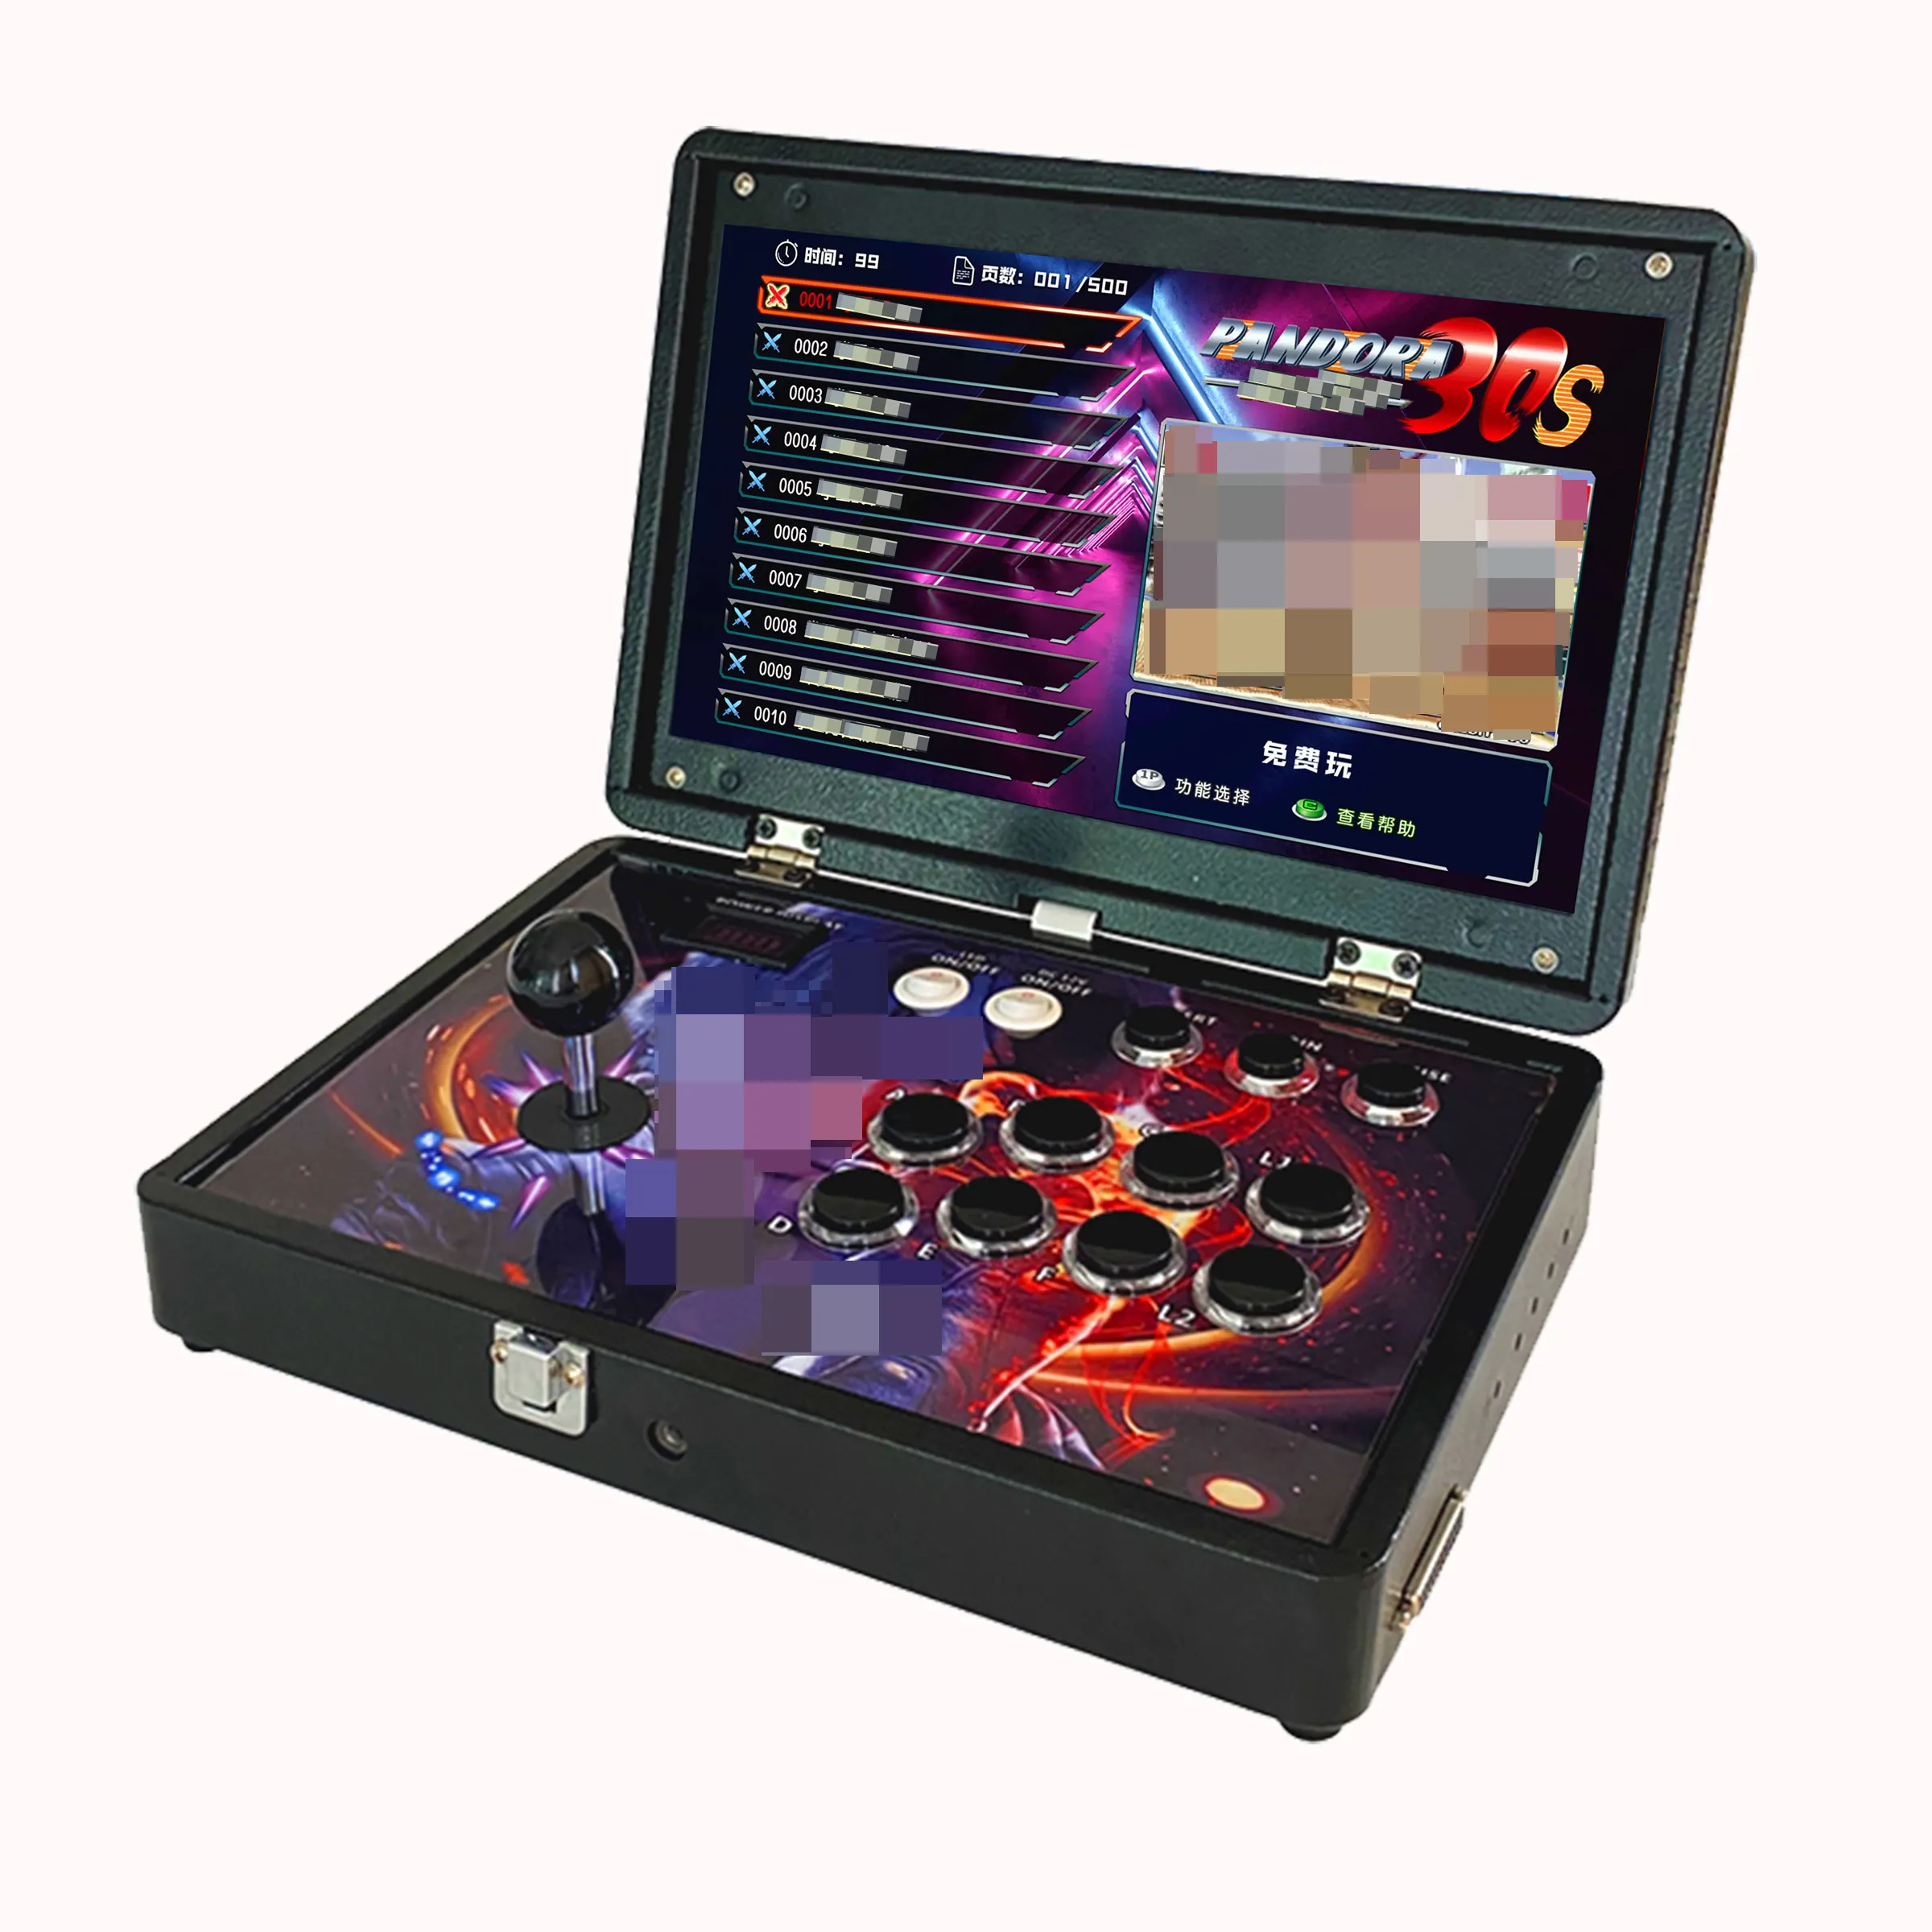 وحدة تحكم ألعاب فيديو محمولة قابلة للطي Arcade في 1 لعبة arcade كلاسيكية بتصميم جديد